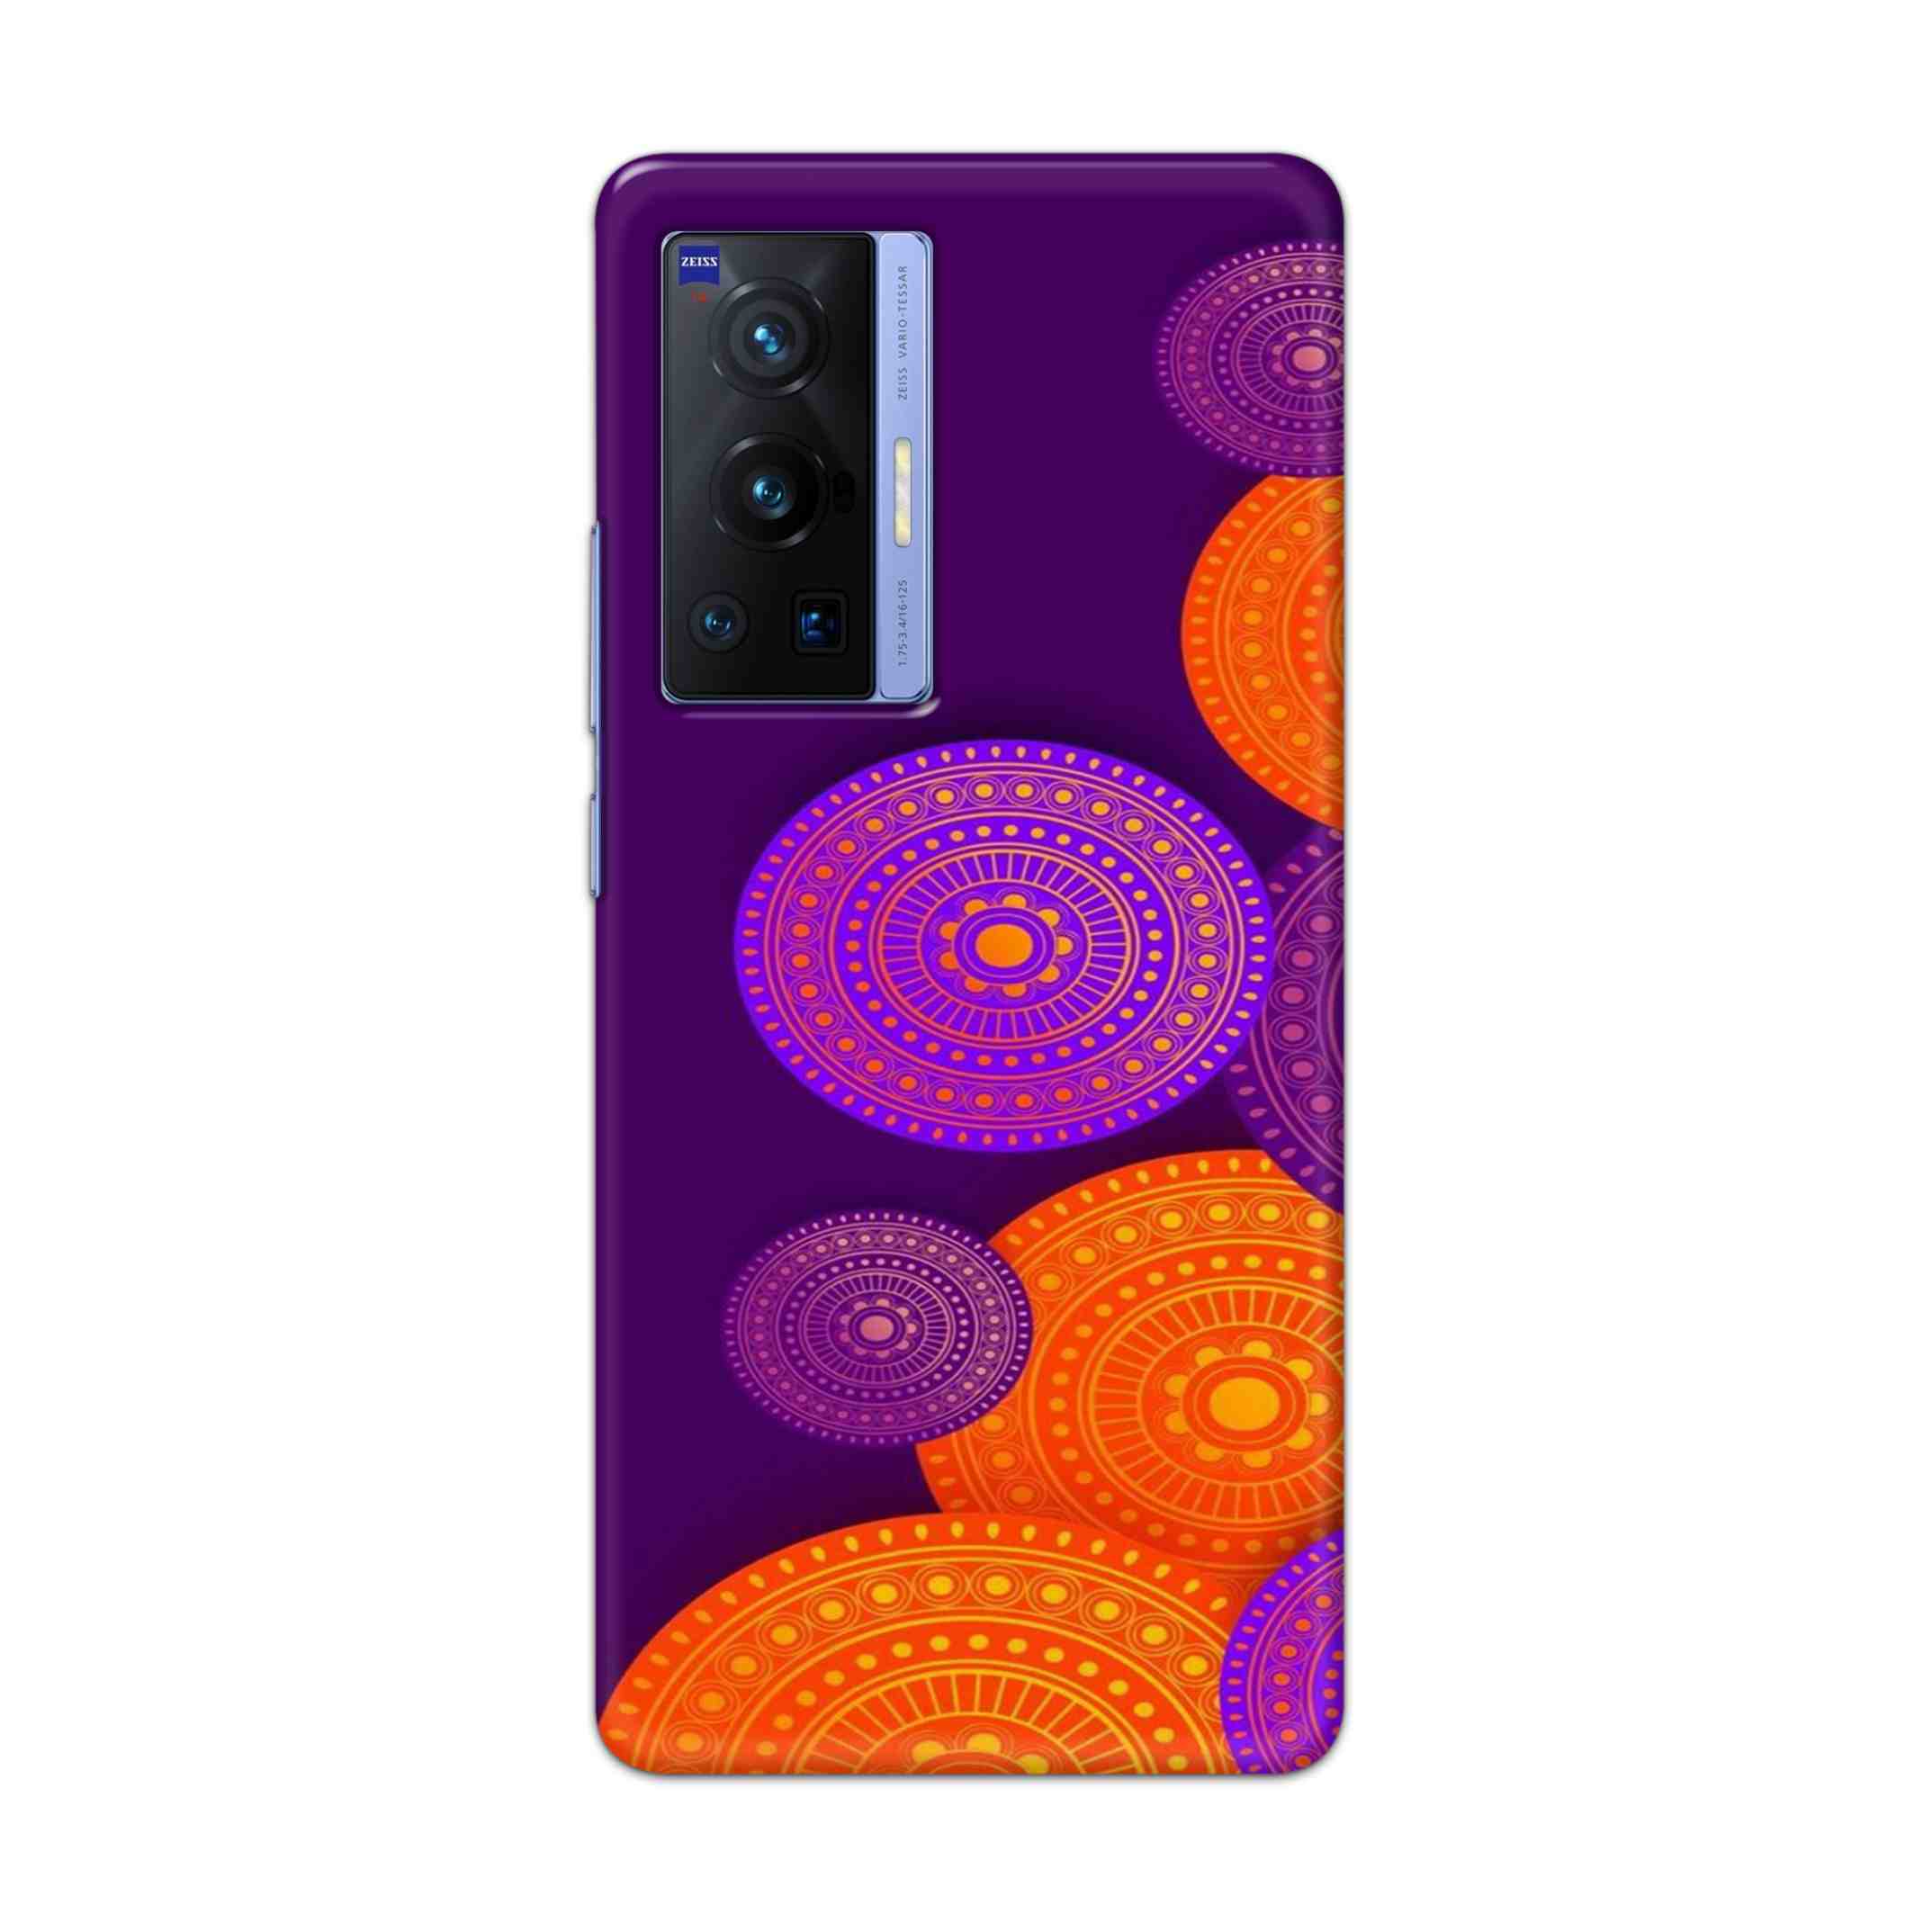 Buy Sand Mandalas Hard Back Mobile Phone Case Cover For Vivo X70 Pro Online